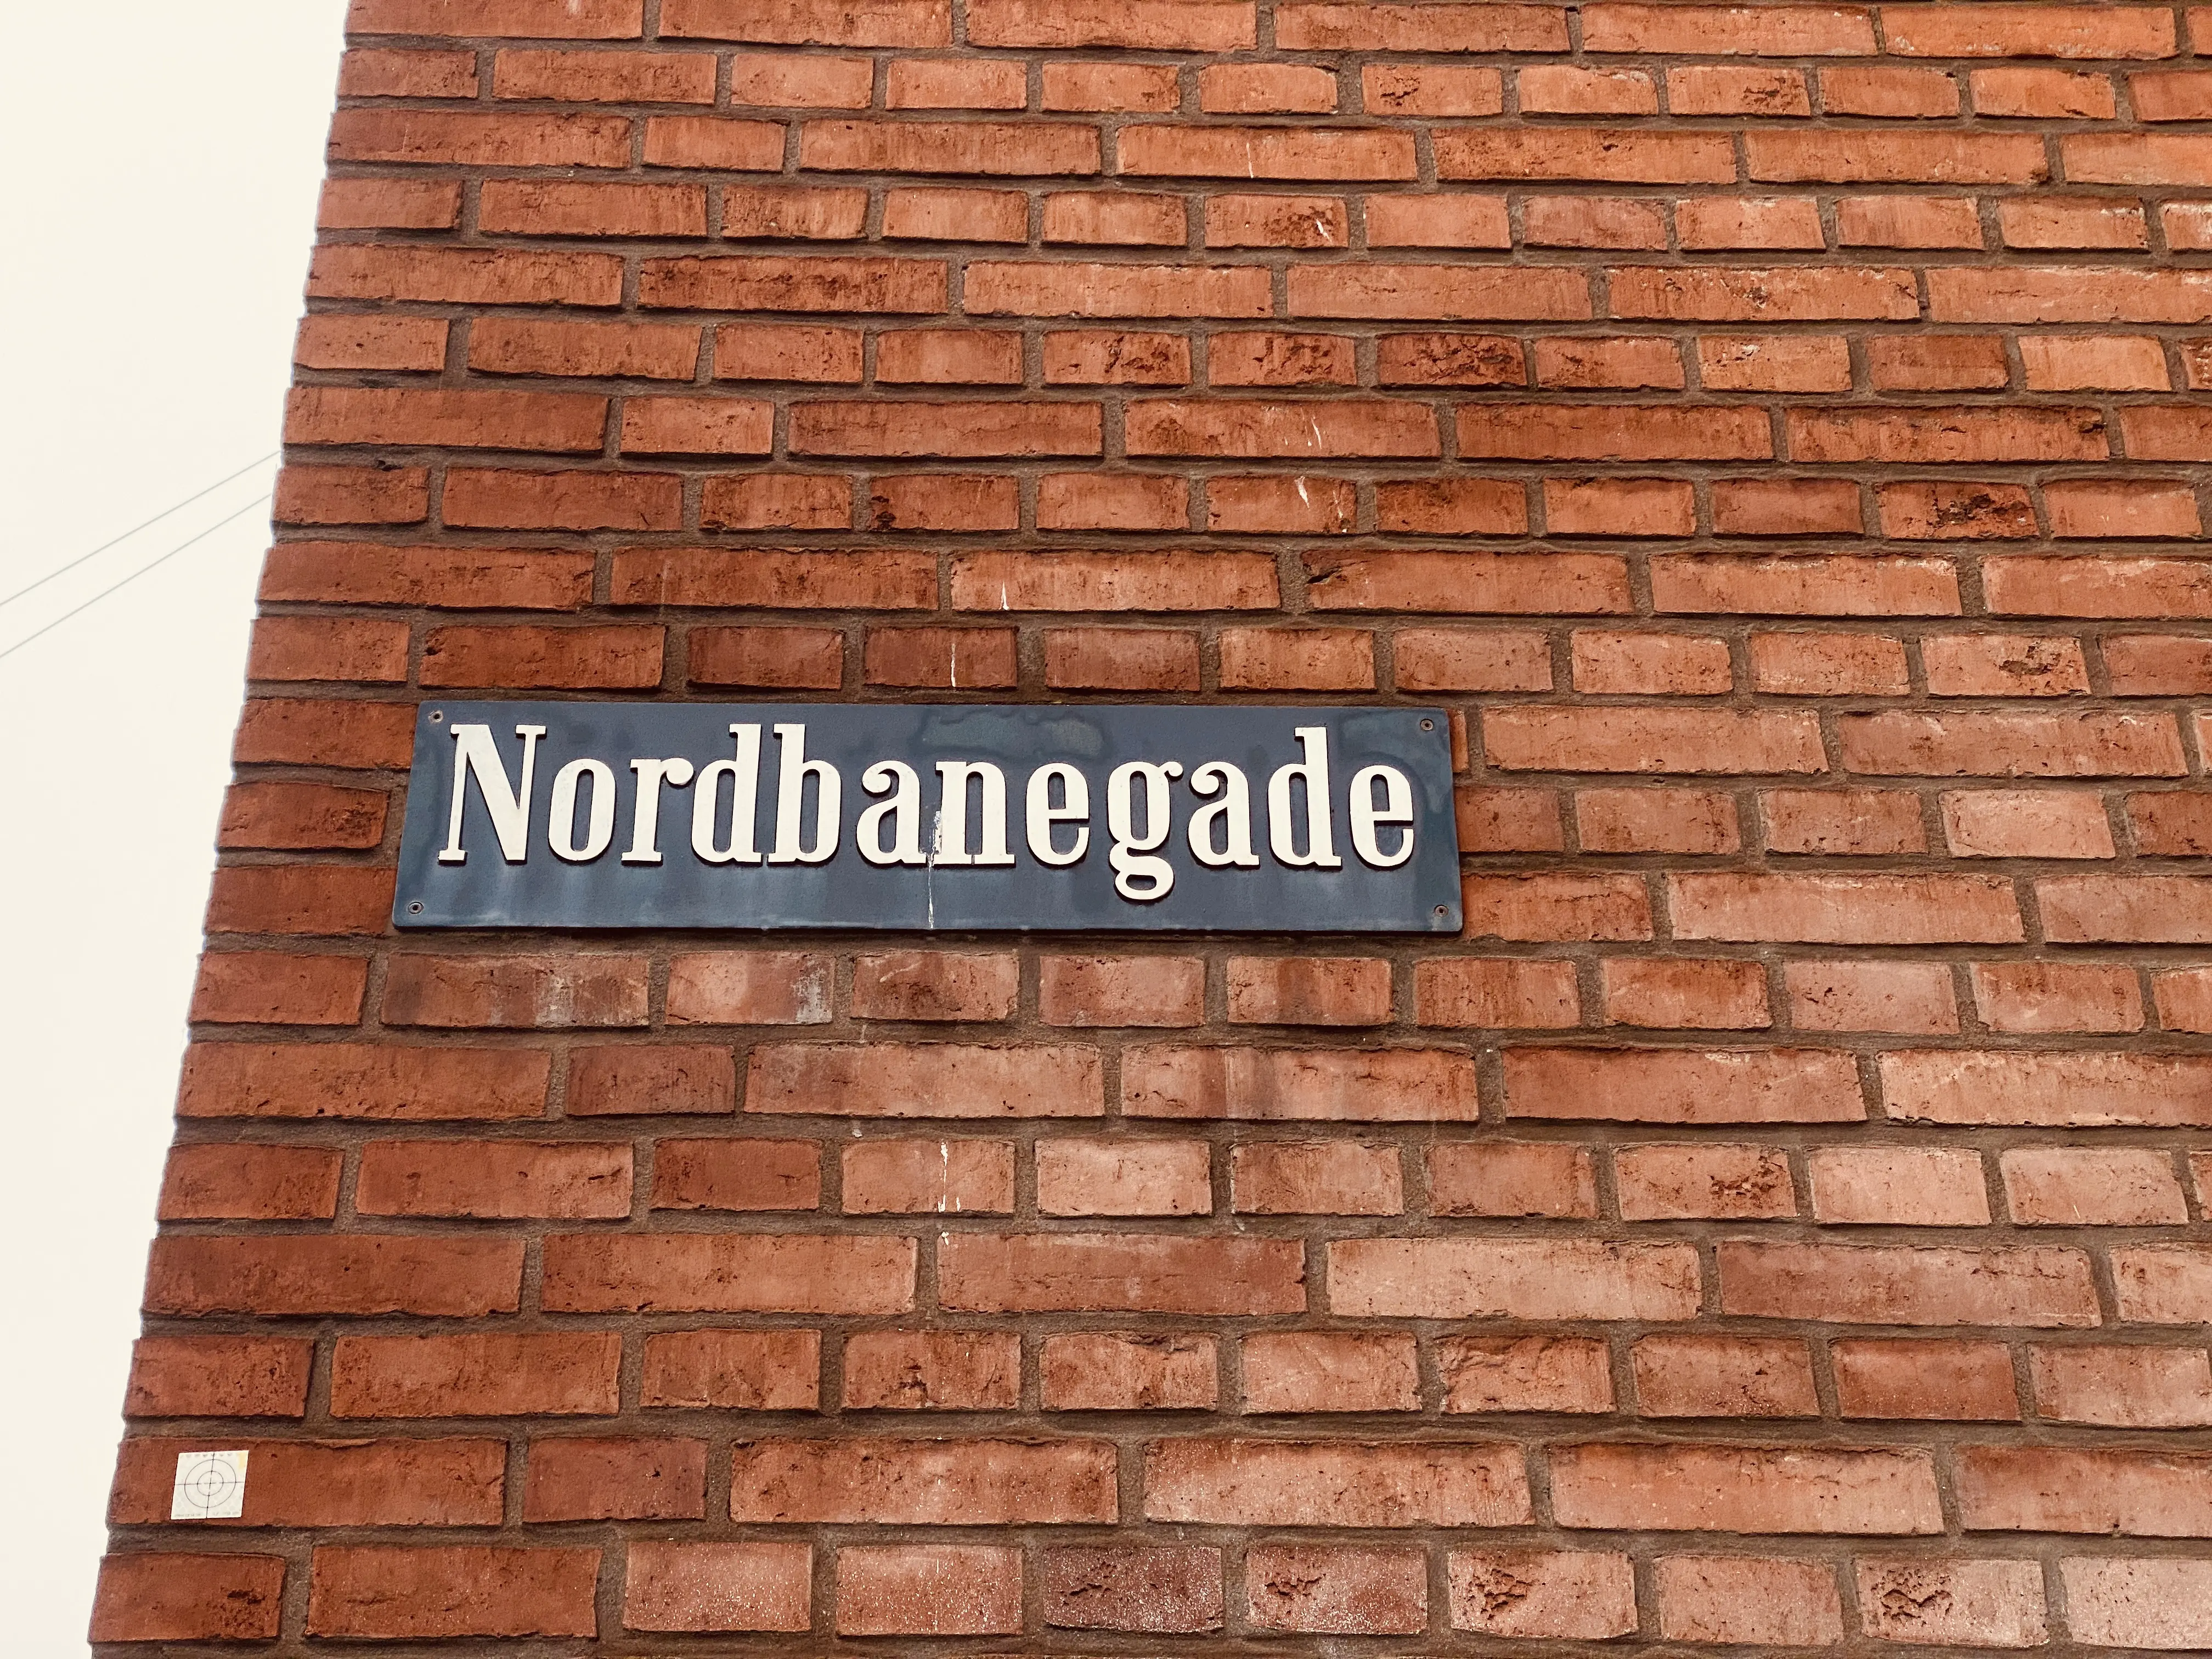 Billede af Nordbanegade, som er opkaldt efter Nordbanen, som gik igennem Nørrebro B Station.